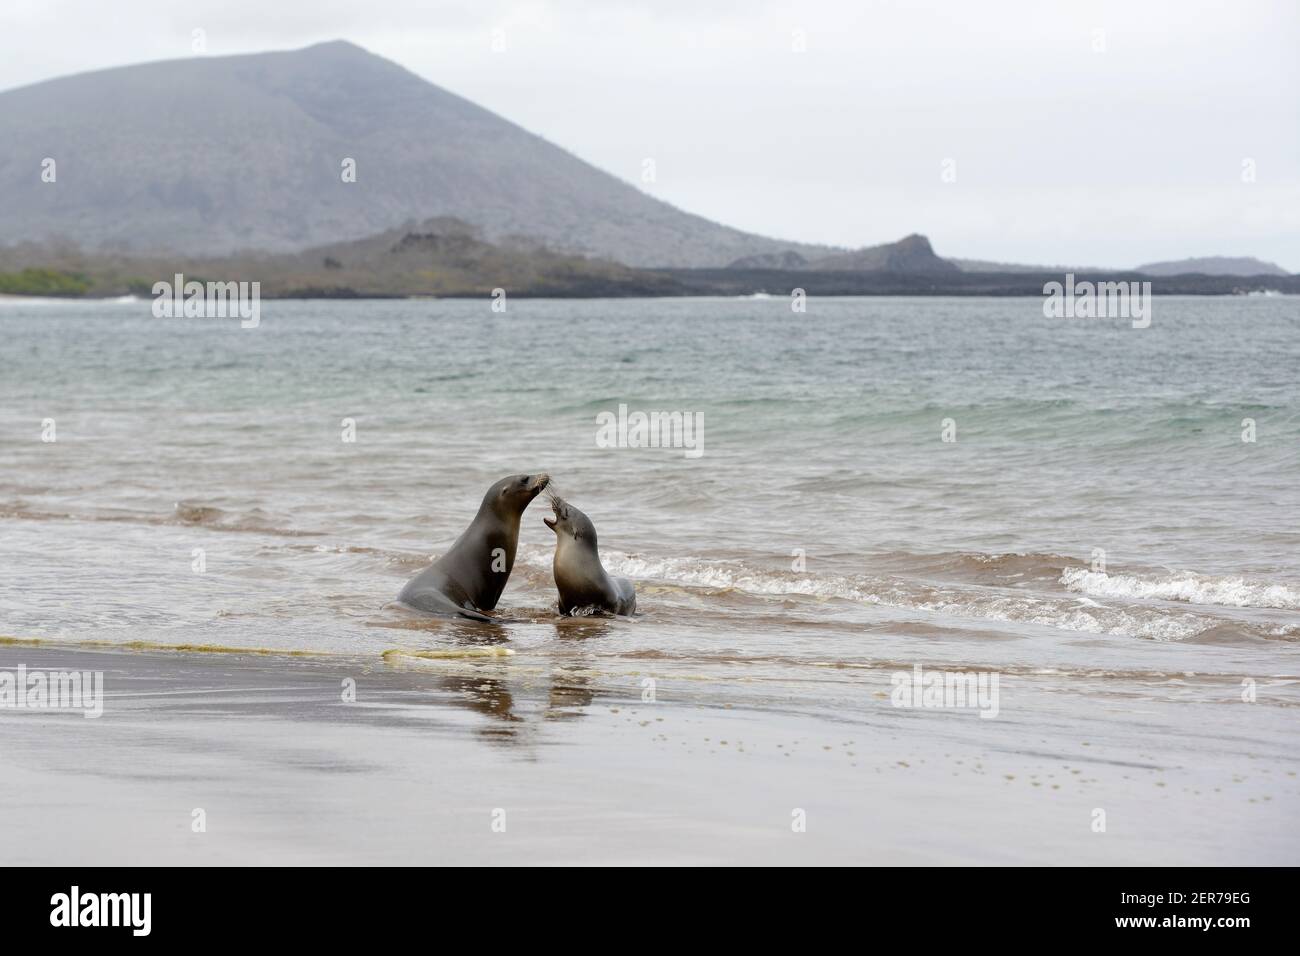 Les lions de mer Galápagos (Zalophus wollebaeki) jouent sur la plage d'Espumilla, île de Santiago, îles Galapagos, Équateur Banque D'Images